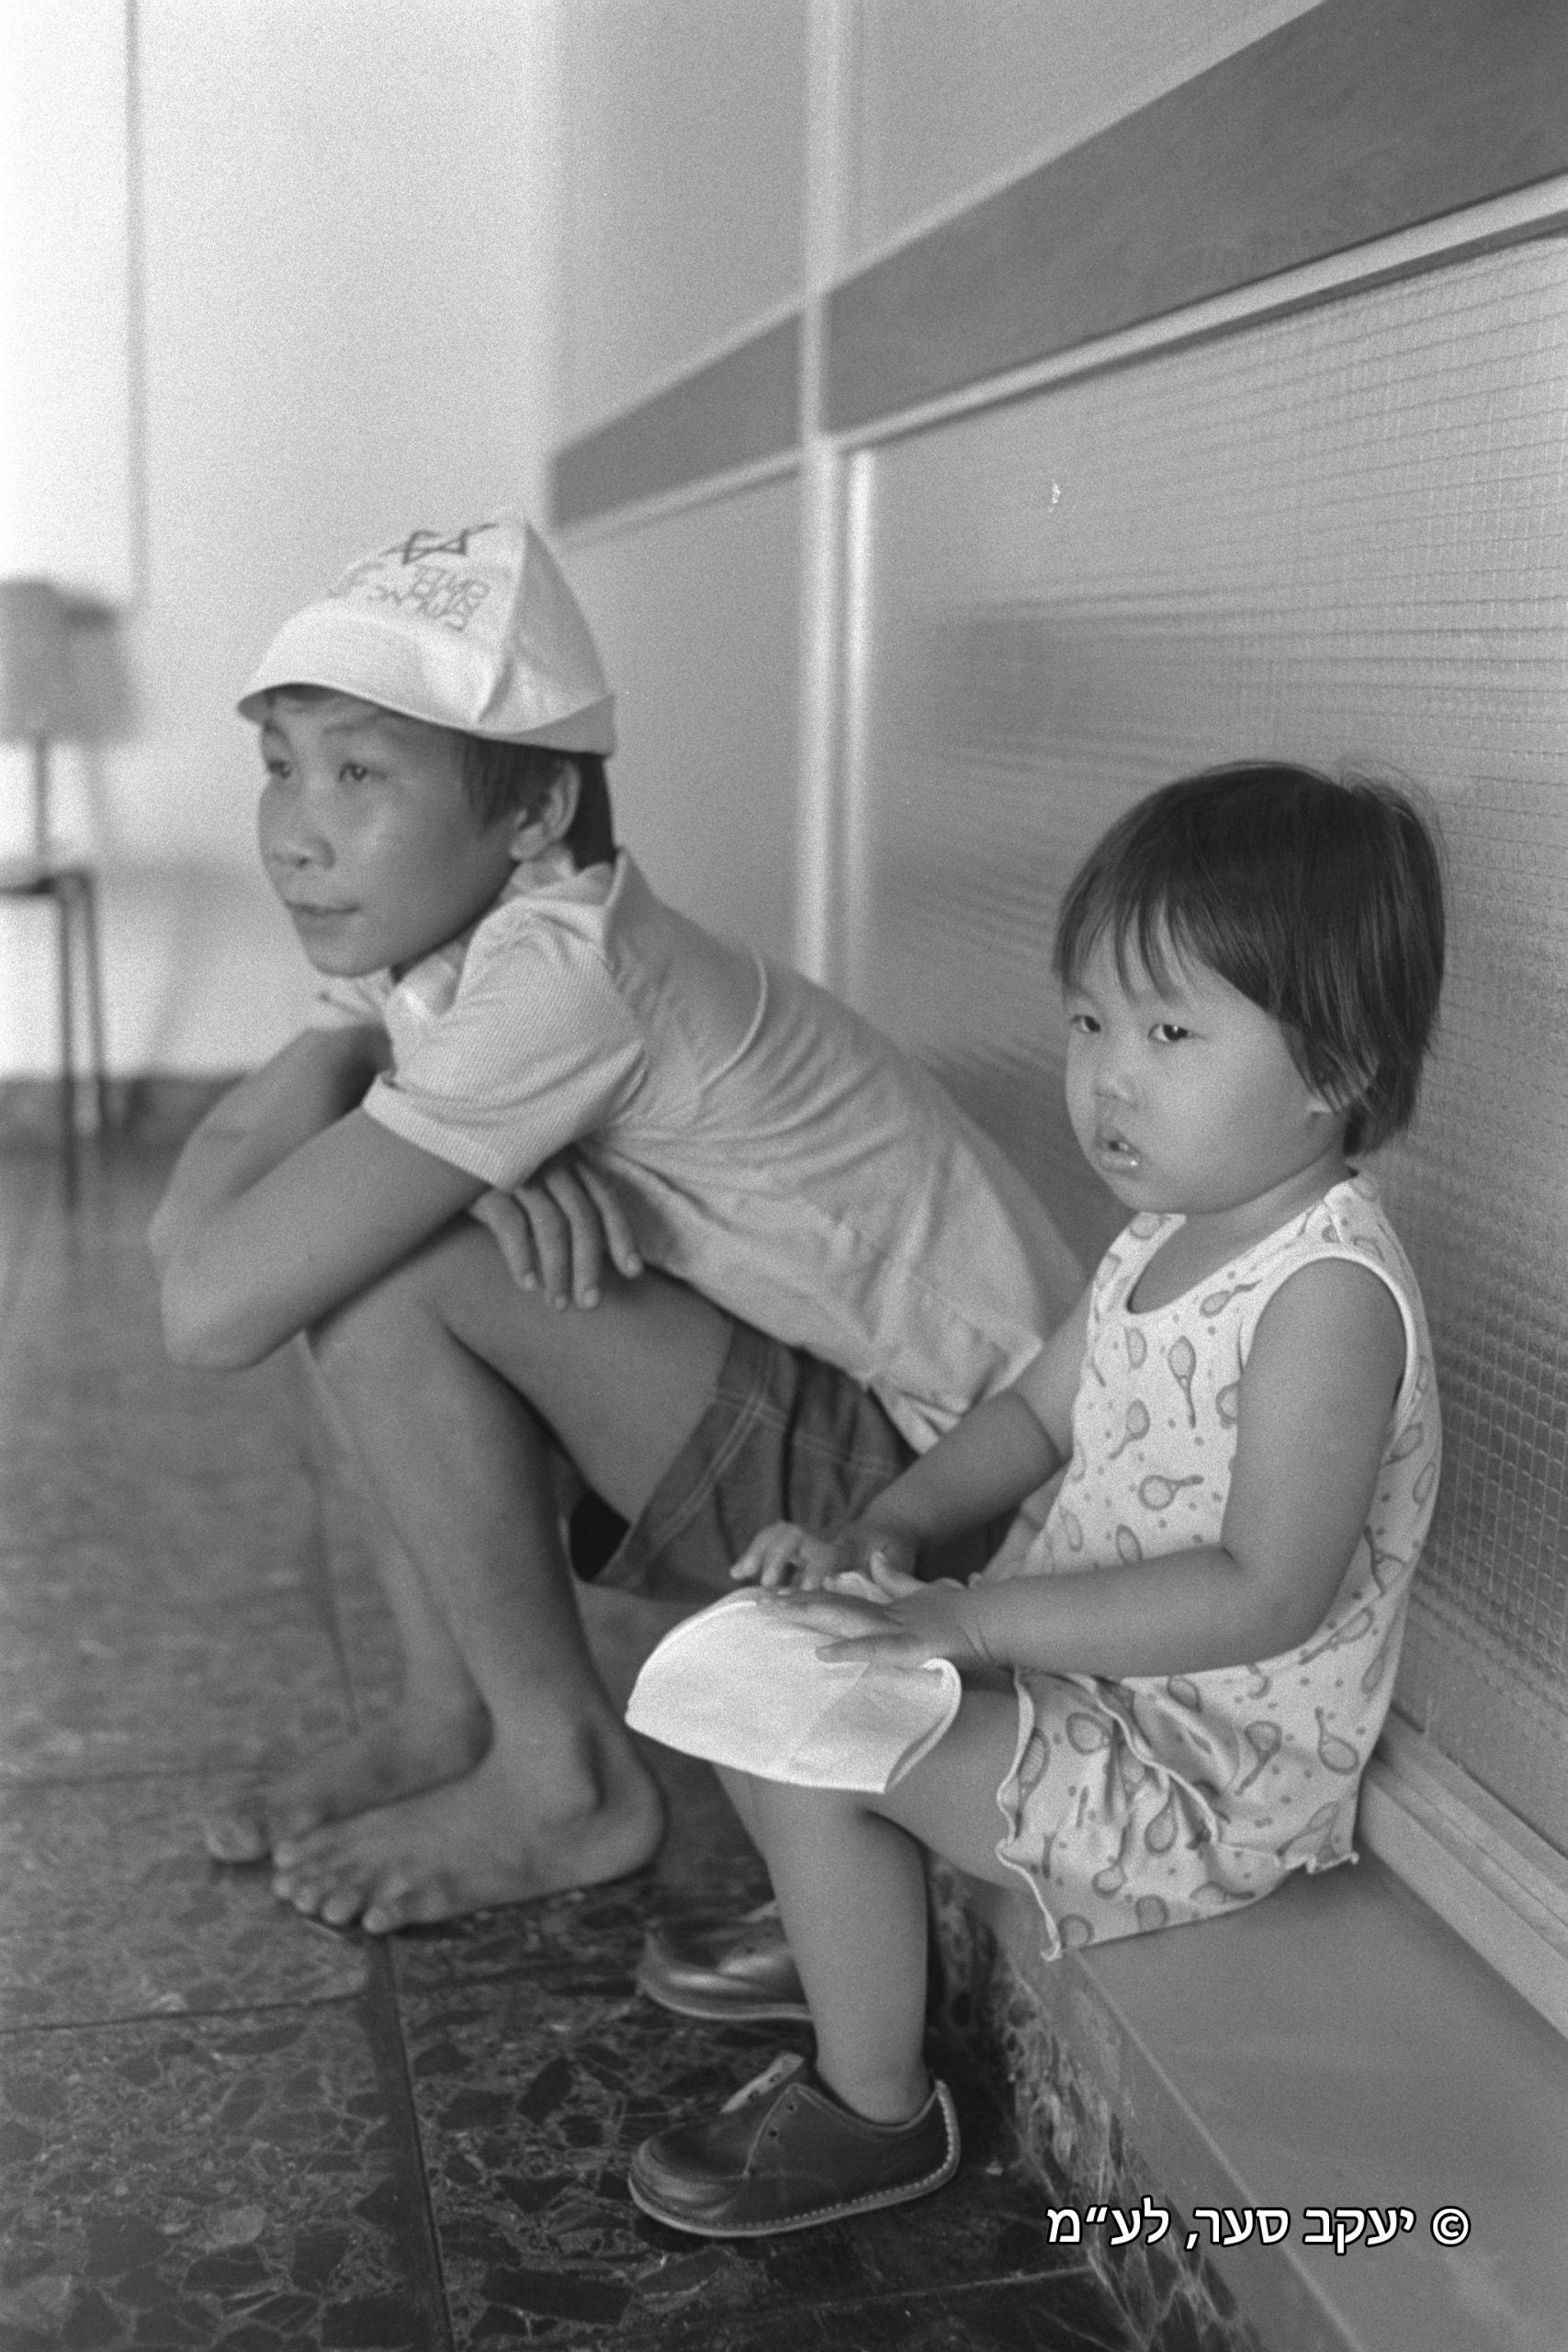 פליטים ווייטנאמים מחכים בנתב"ג - © יעקב סער, לע"מ